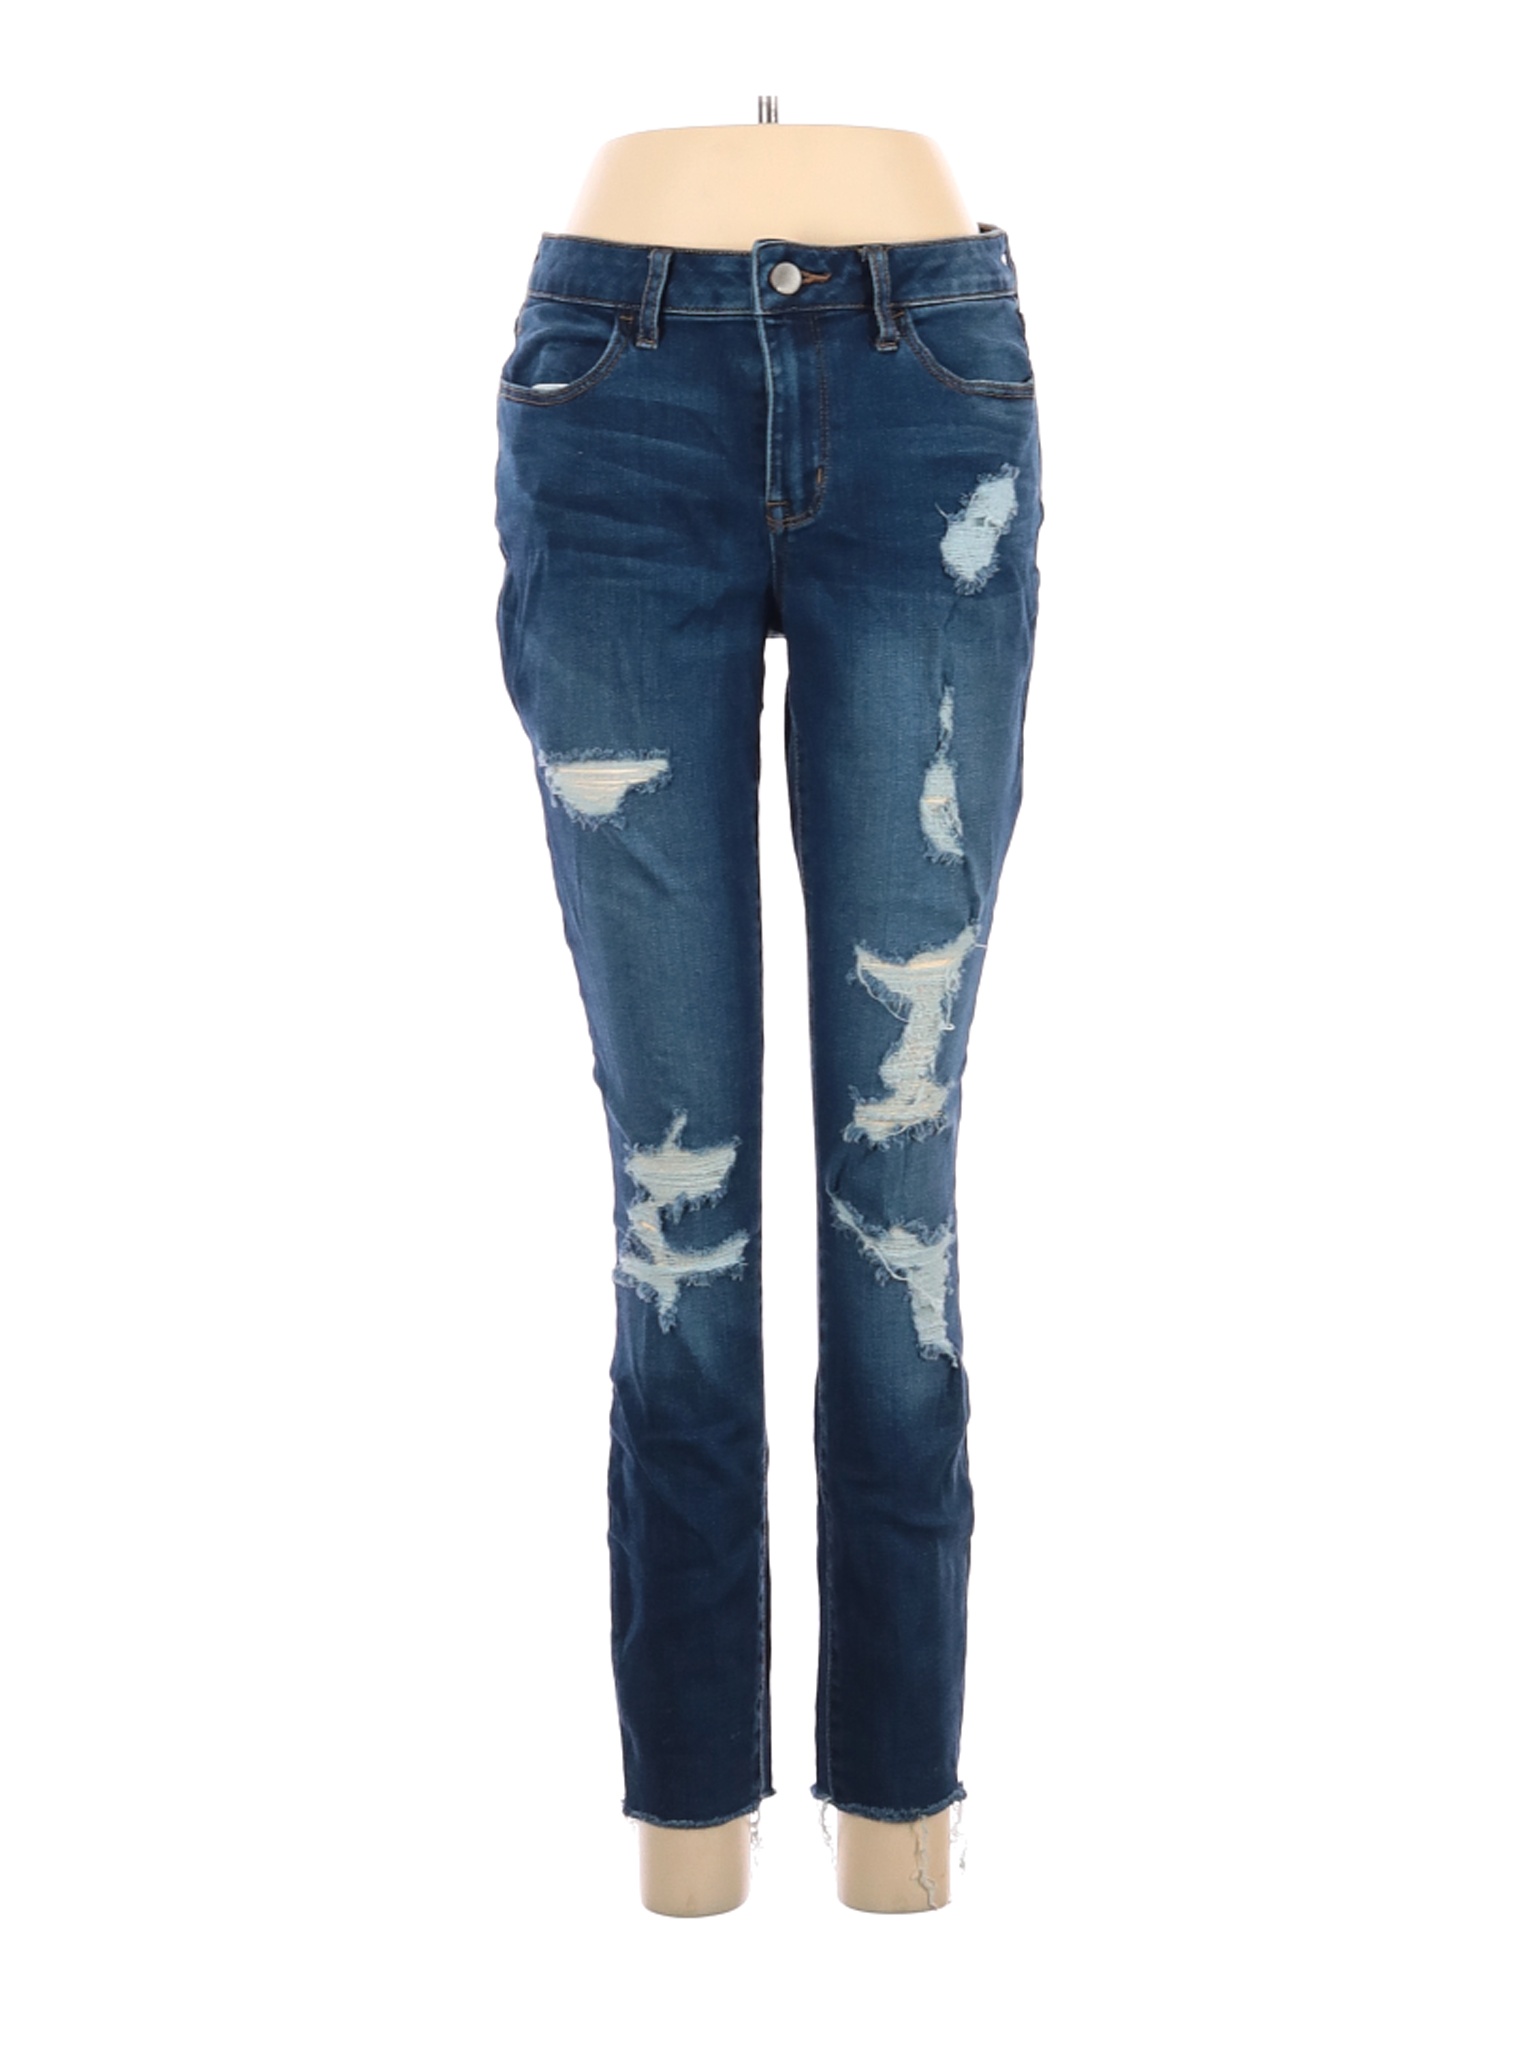 A.n.a. A New Approach Women Blue Jeans 29W | eBay